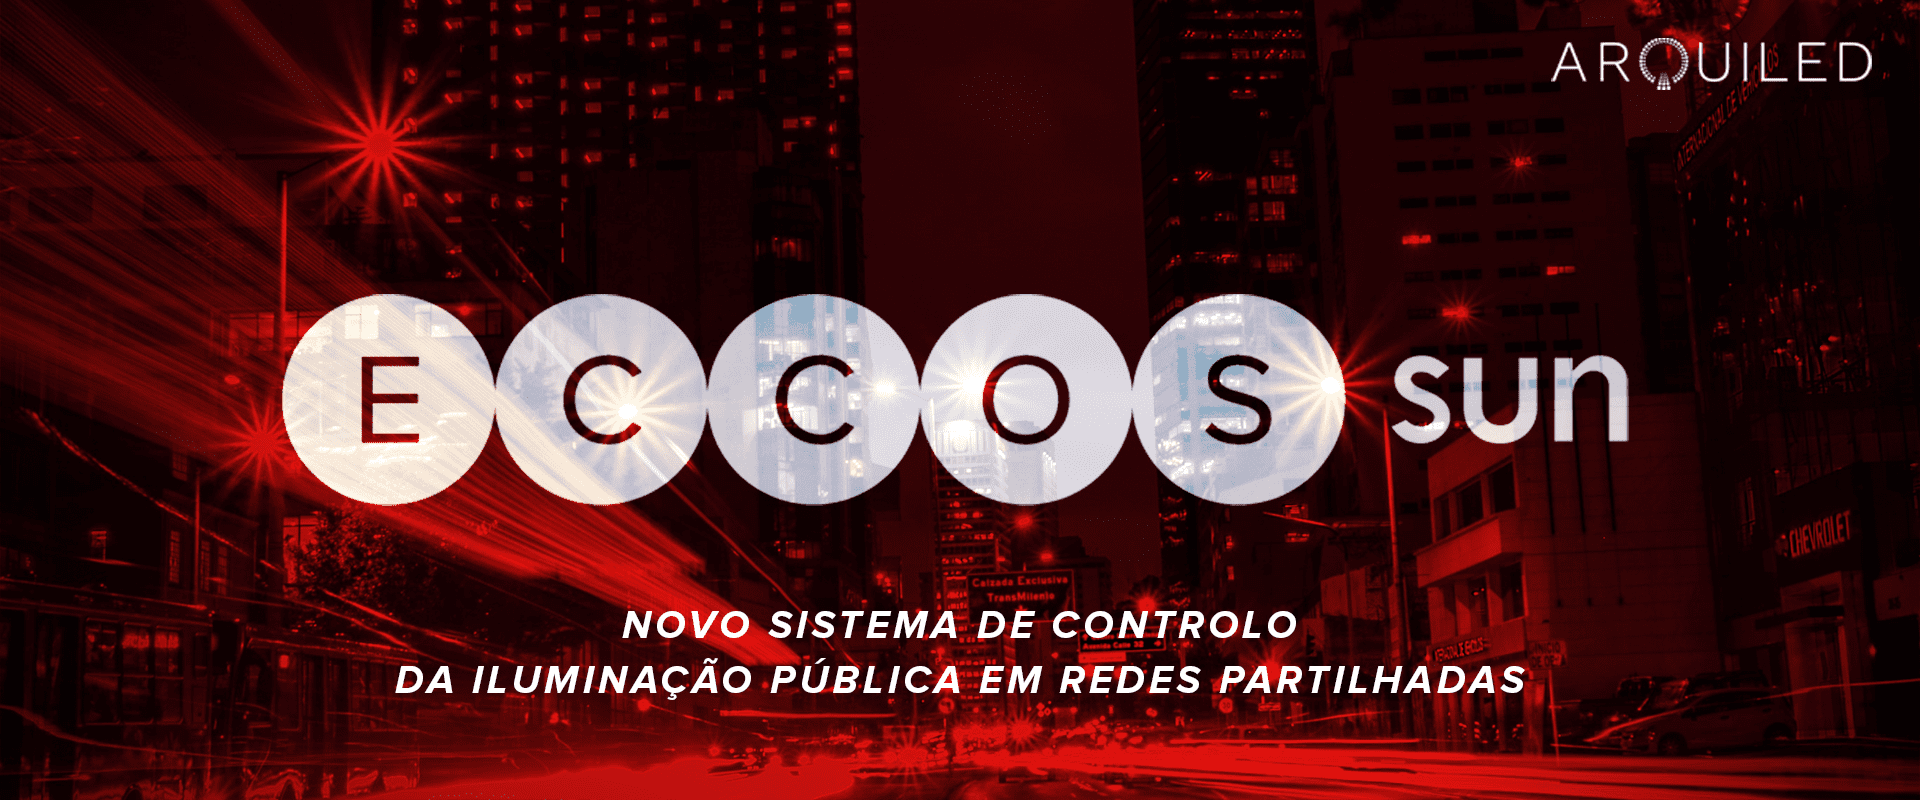 ECCOS SUN - sistema de controlo de iluminação pública em redes partilhadas